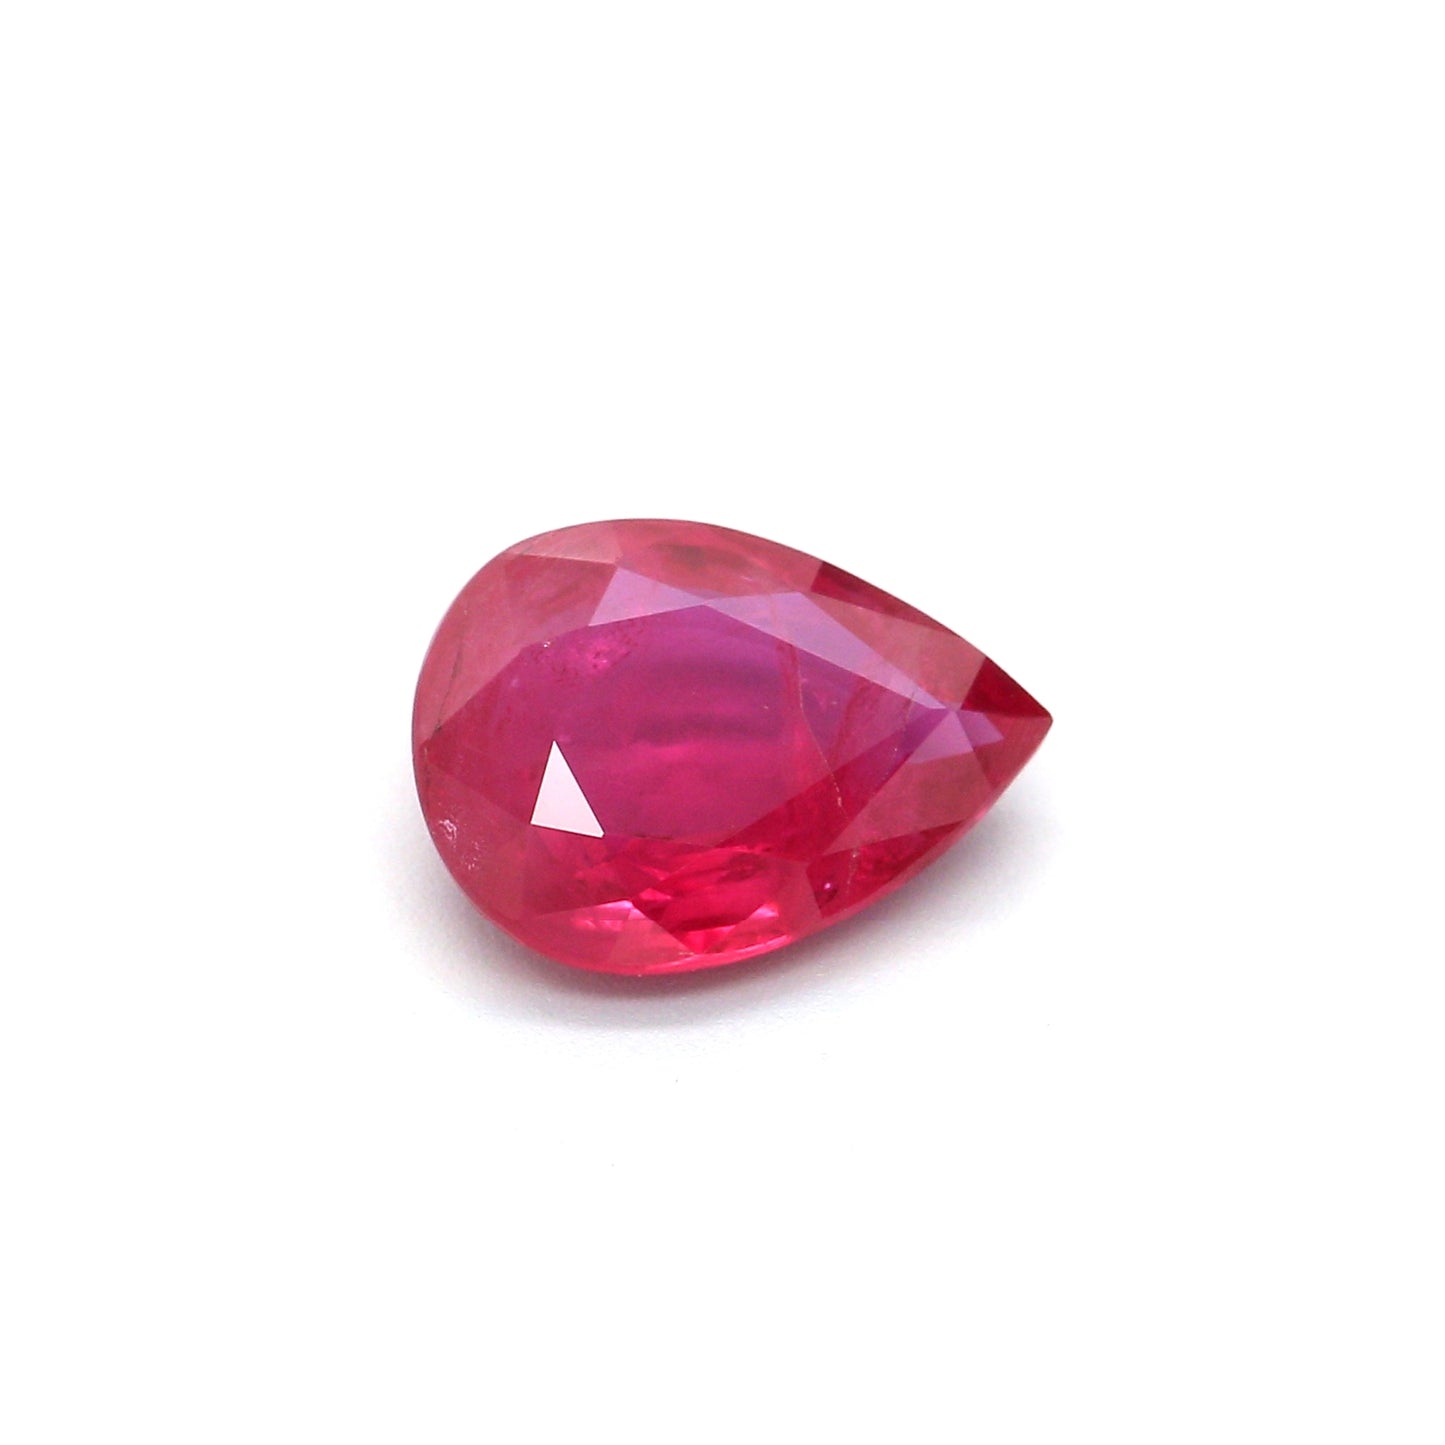 1.22ct Purplish Red, Pear Shape Ruby, H(b), Mozambique - 8.06 x 6.03 x 2.78mm